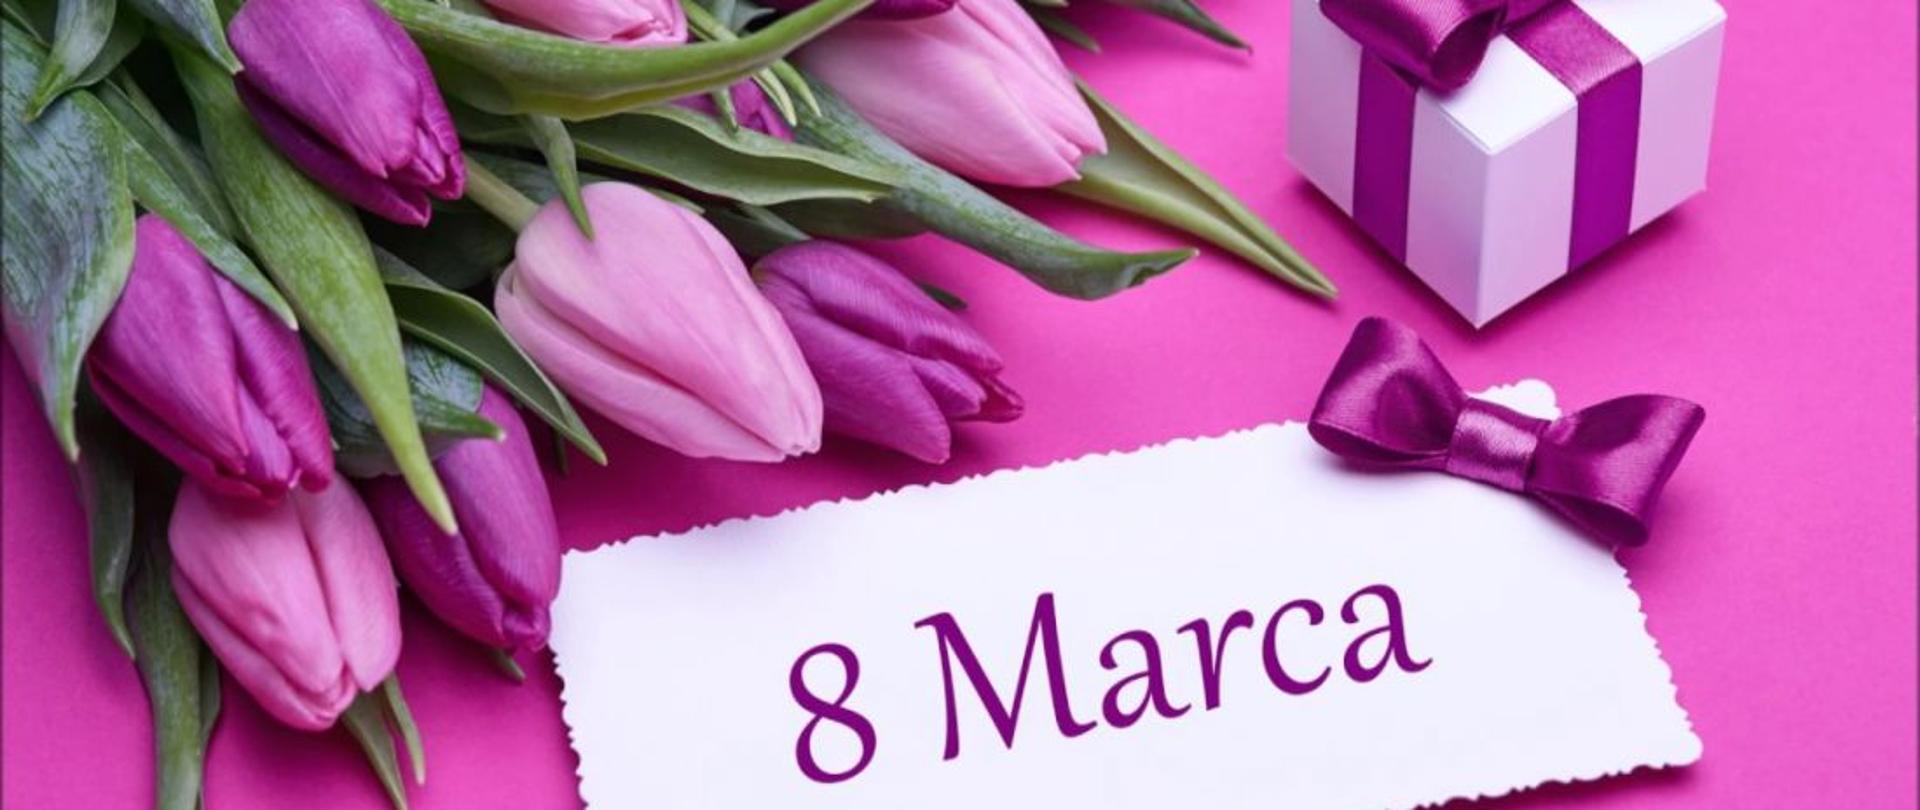 Kartka, na której znajdują się kwiaty oraz napis 8 Marca, nawiązująca do Międzynarodowego Dnia Kobiet